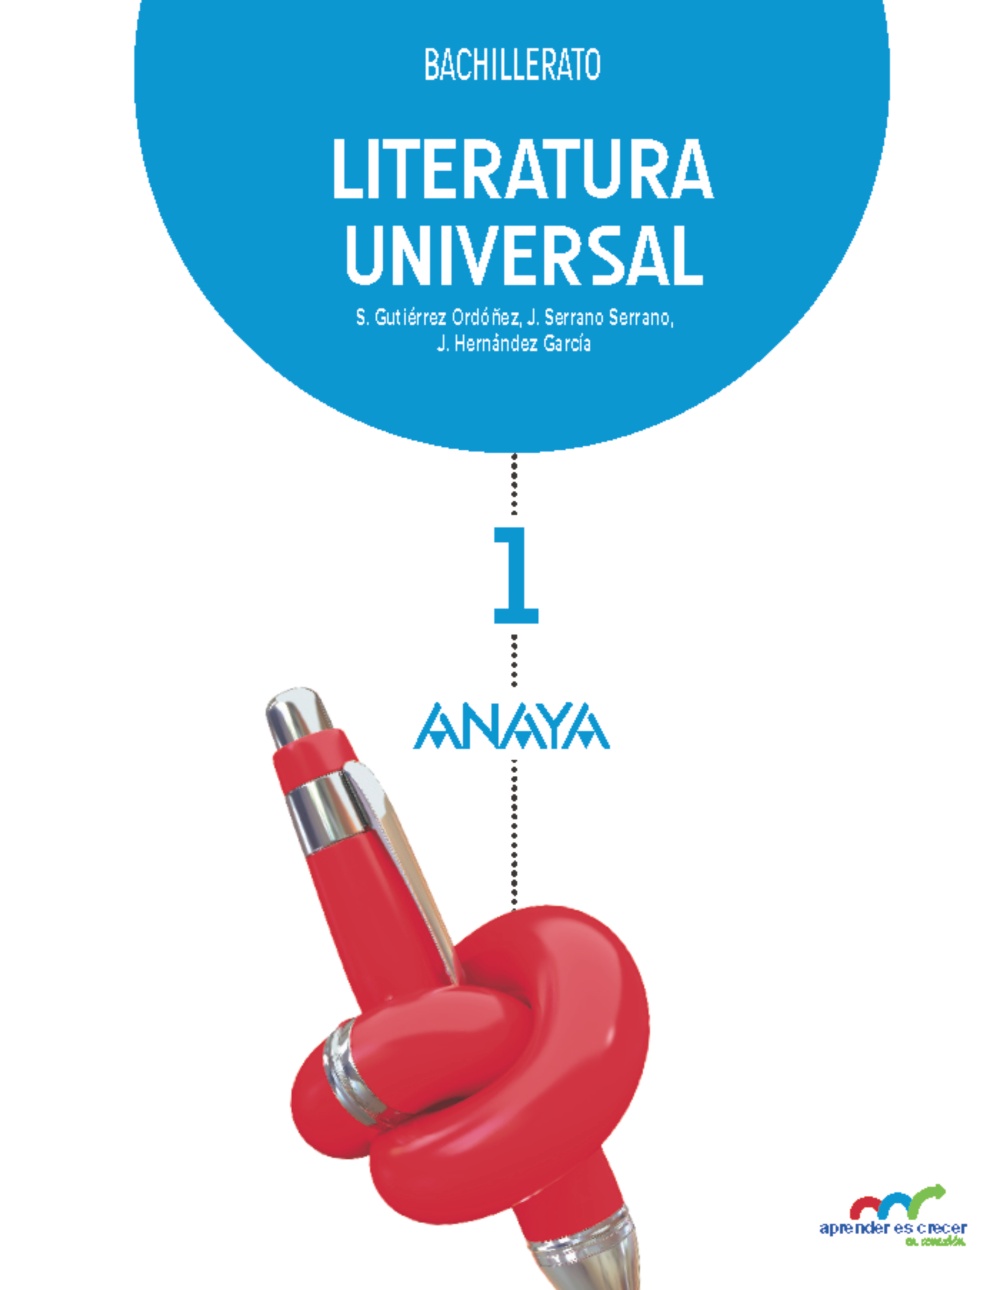 Solucionario Literatura Universal 1 Bachillerato Anaya Aprender es Crecer PDF Ejercicios Resueltos-pdf